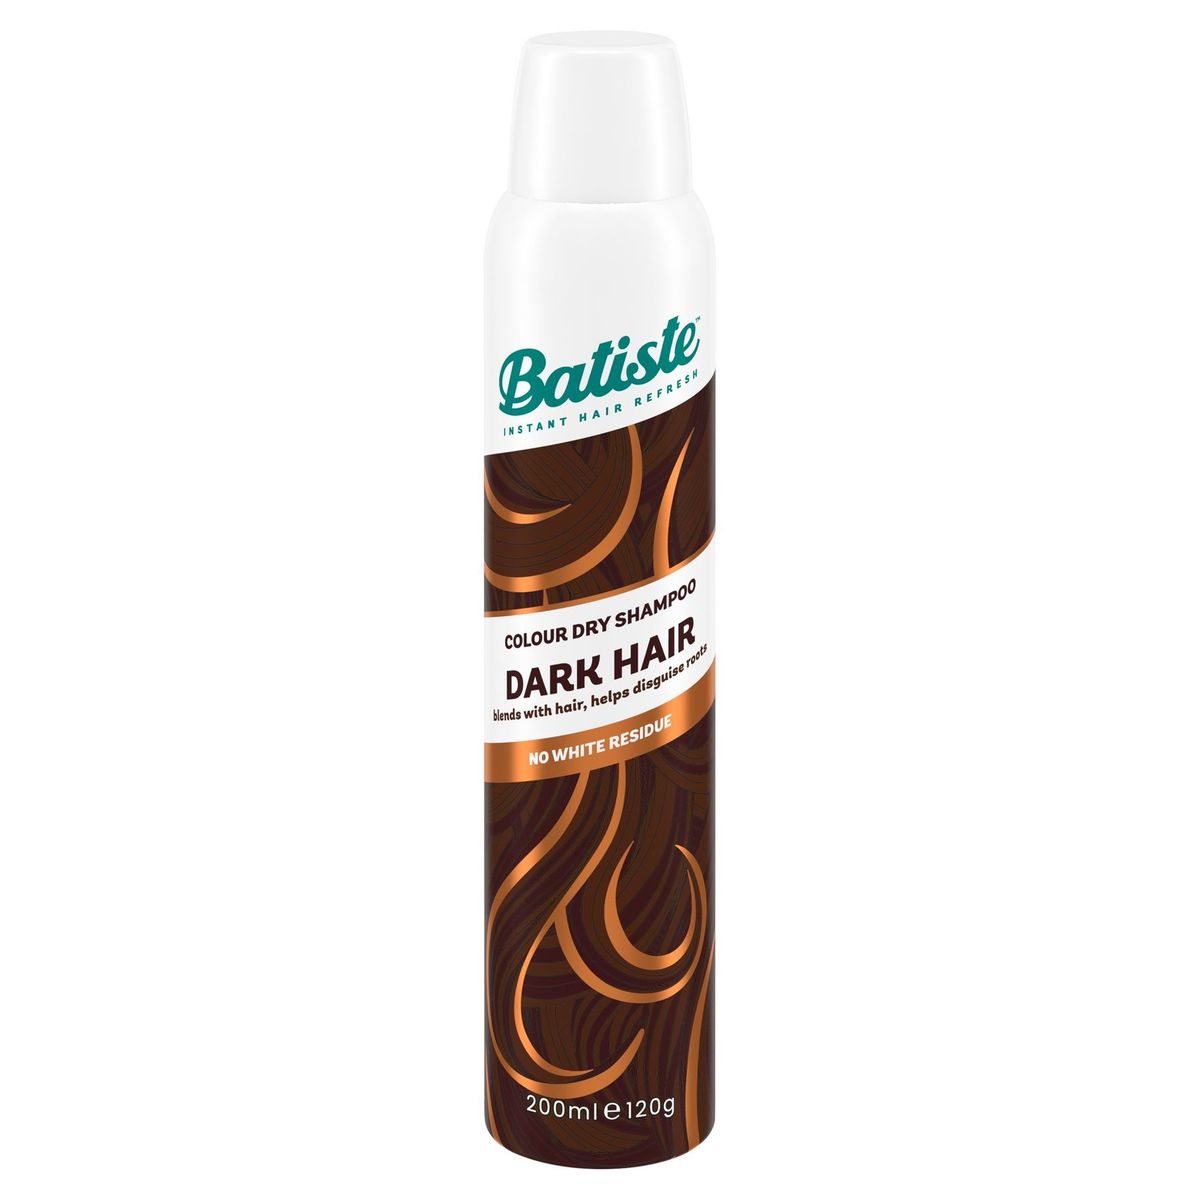 Batiste Colour Dry Shampoo Dark Hair 200 ml